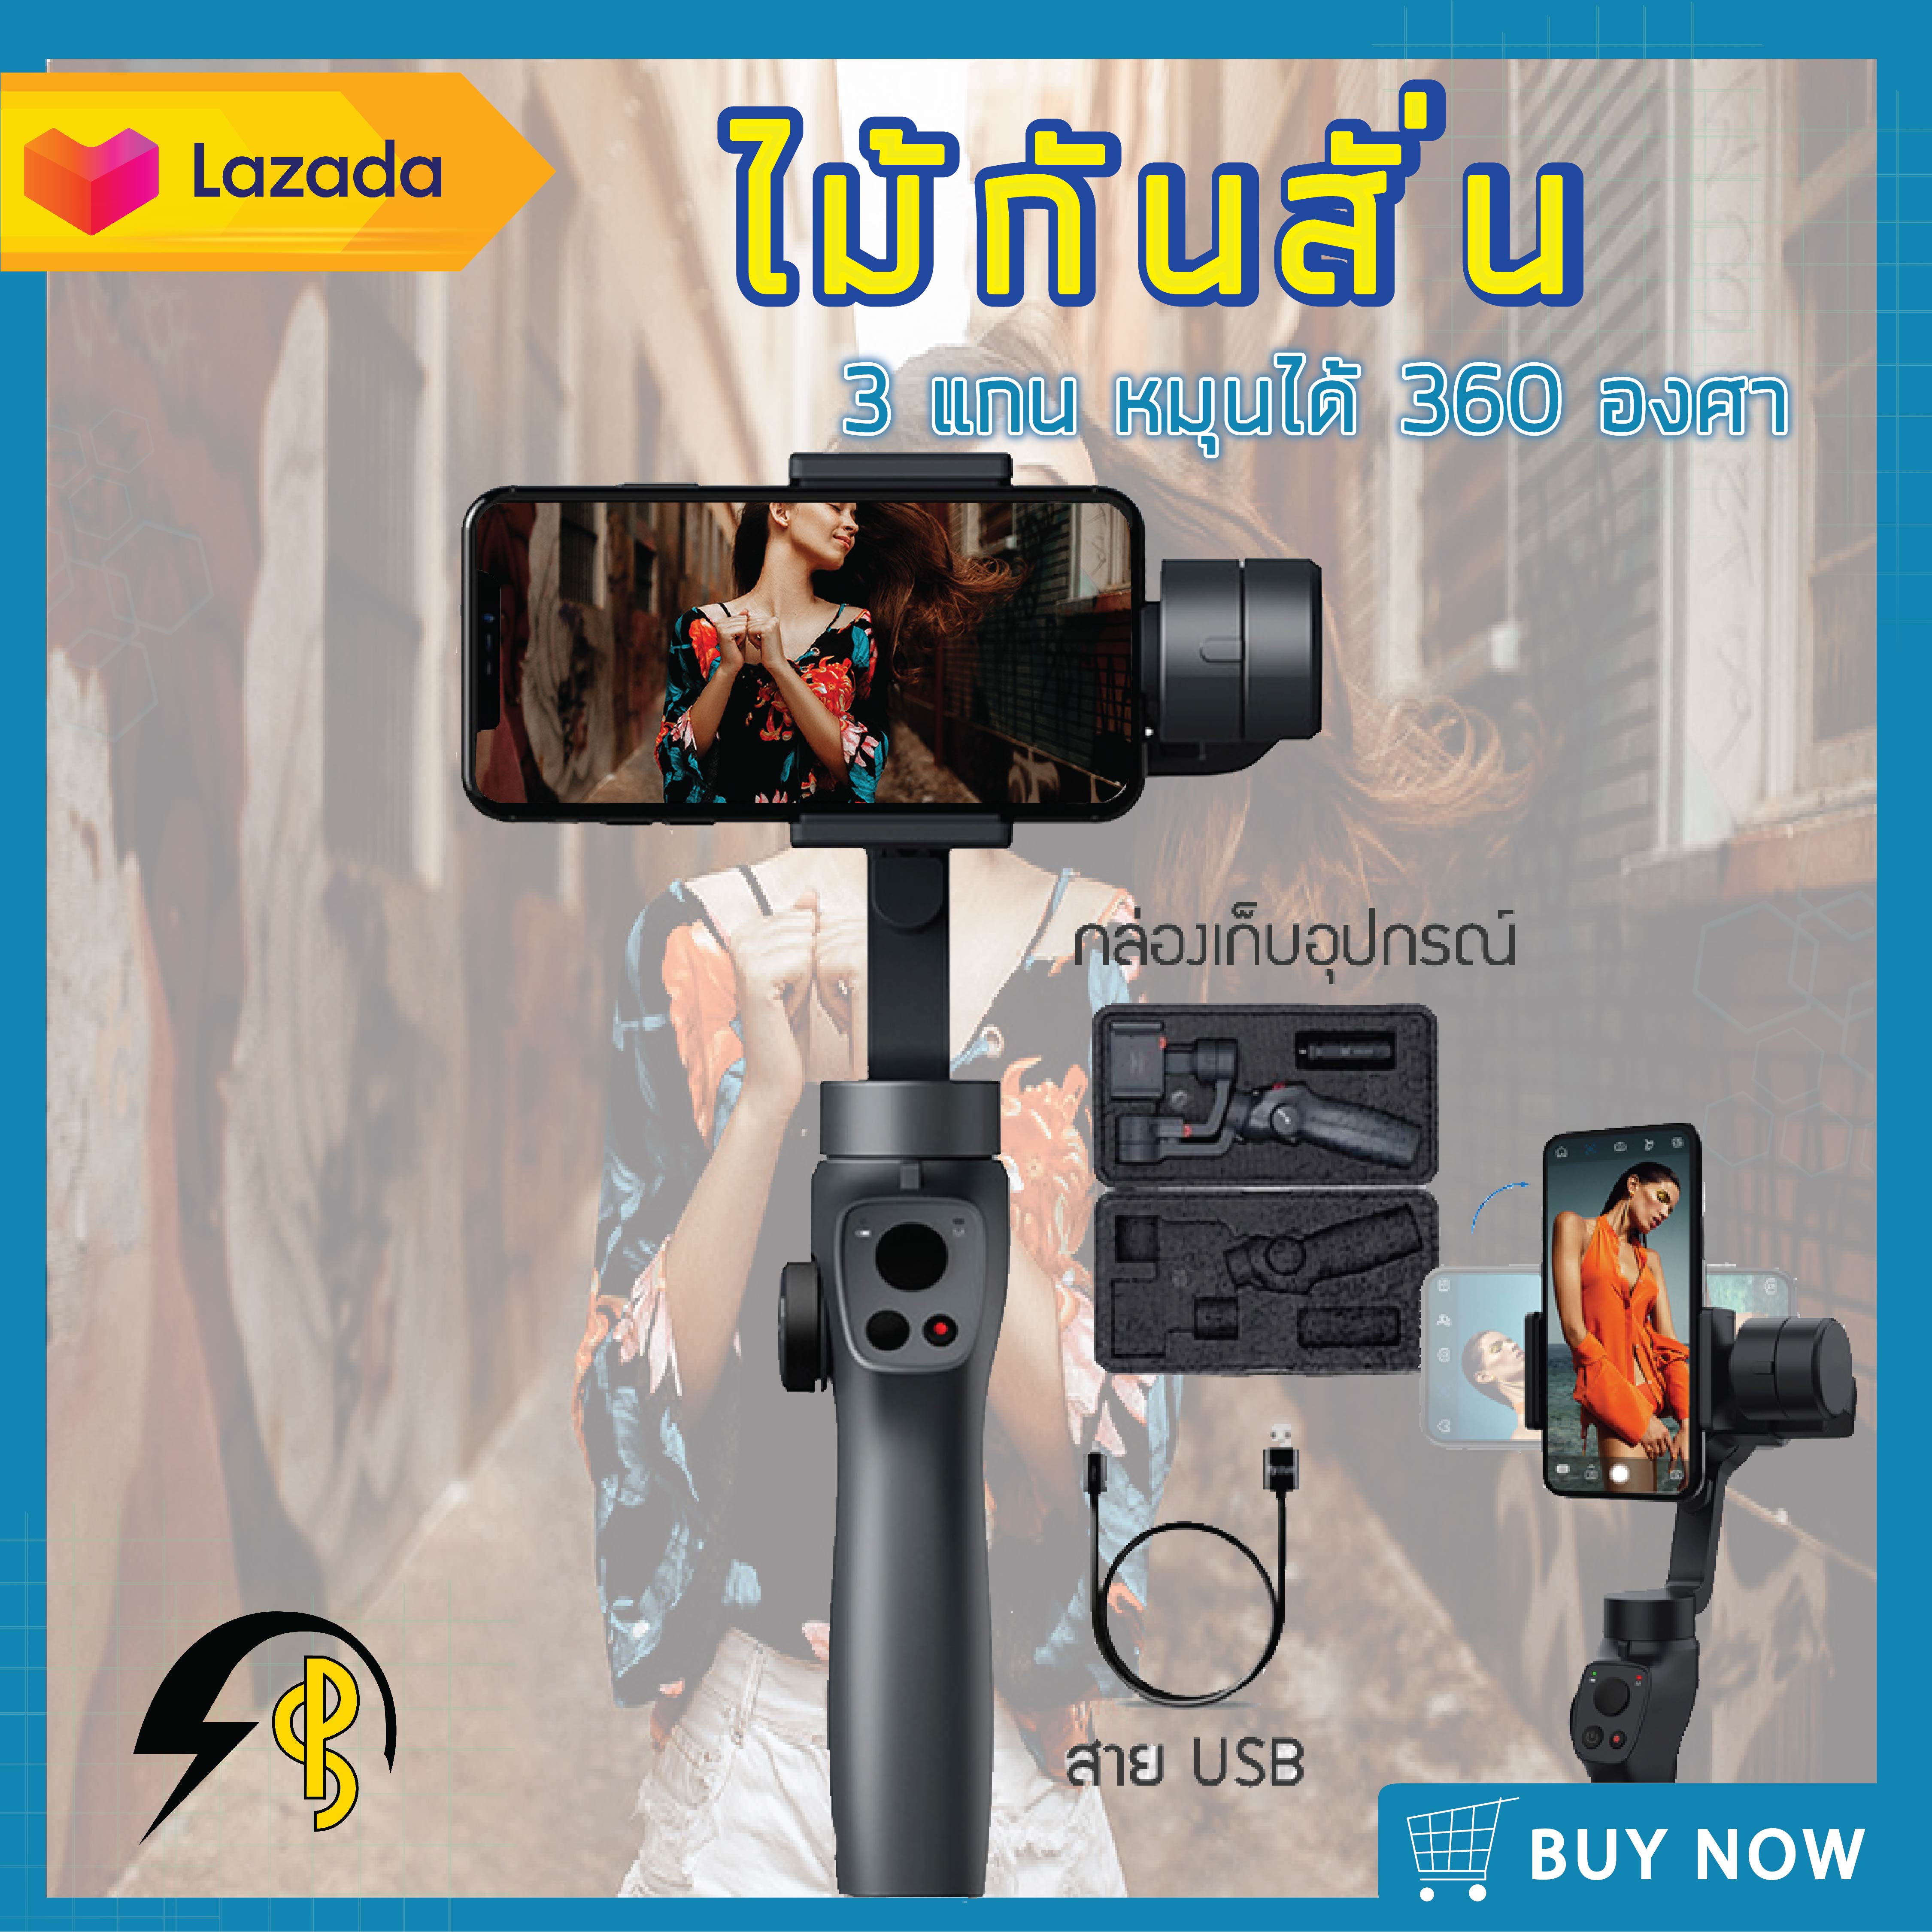 ไม้กันสั่นกล้อง มือถือ FUNSNAP Capture 2s selfie Stick ทำVLOG 3 แกน สำหรับถ่ายรูปและวีดีโอ ไม้เซลฟี่ อุปกรณ์กันสั่น  PowerSquare